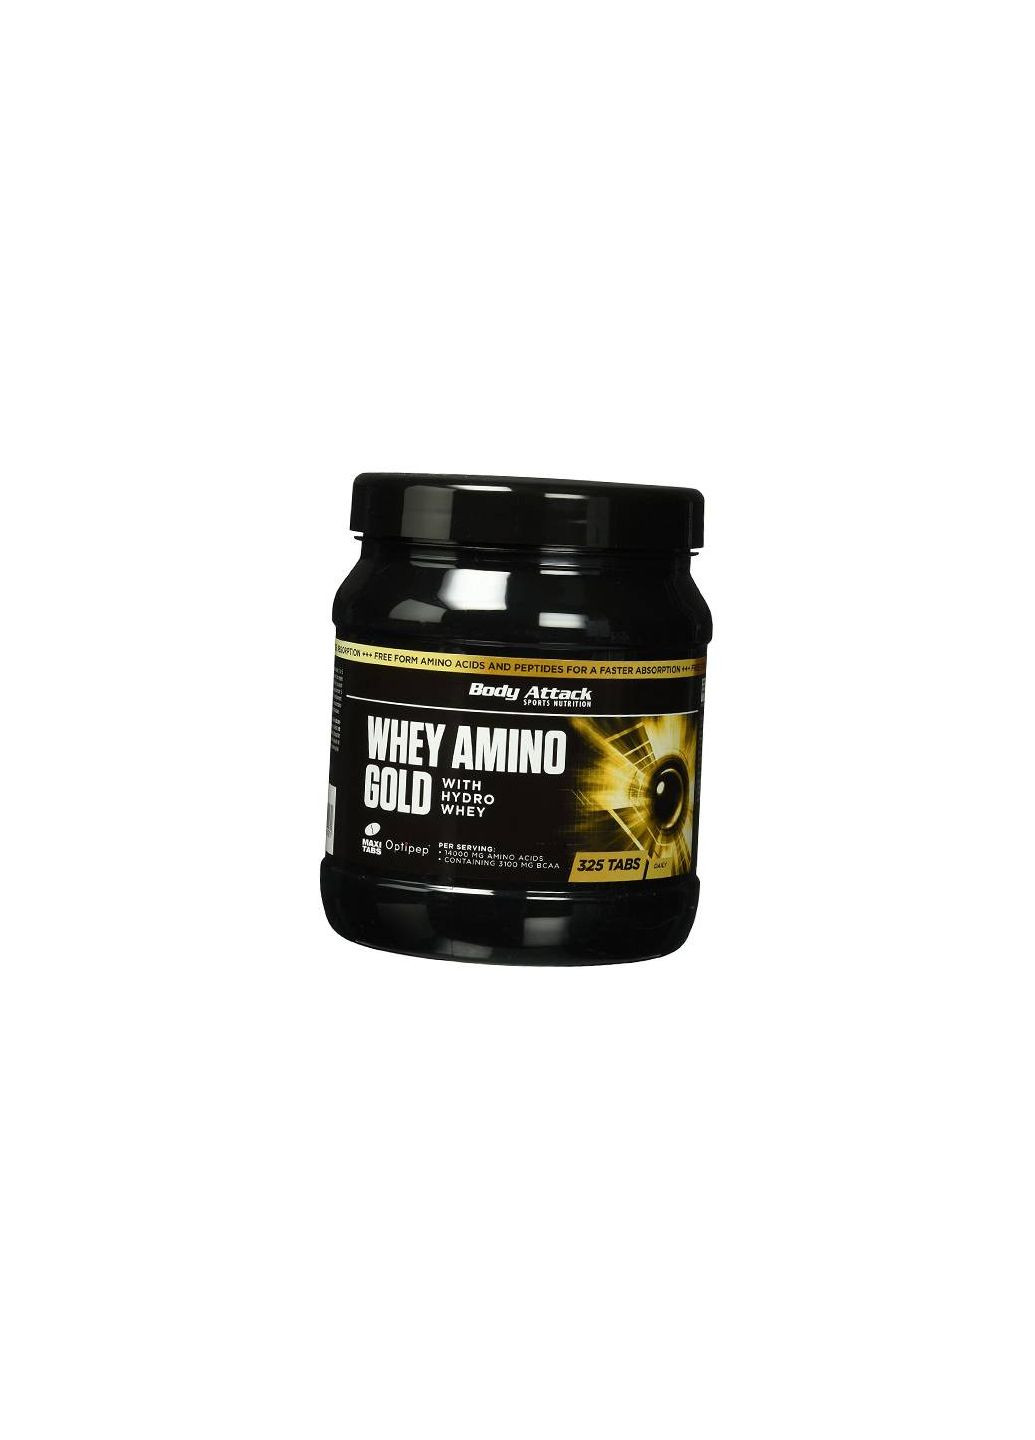 Аминокомплекс, Whey Amino Gold, 325таб (2725100127251001) Body Attack (293254457)